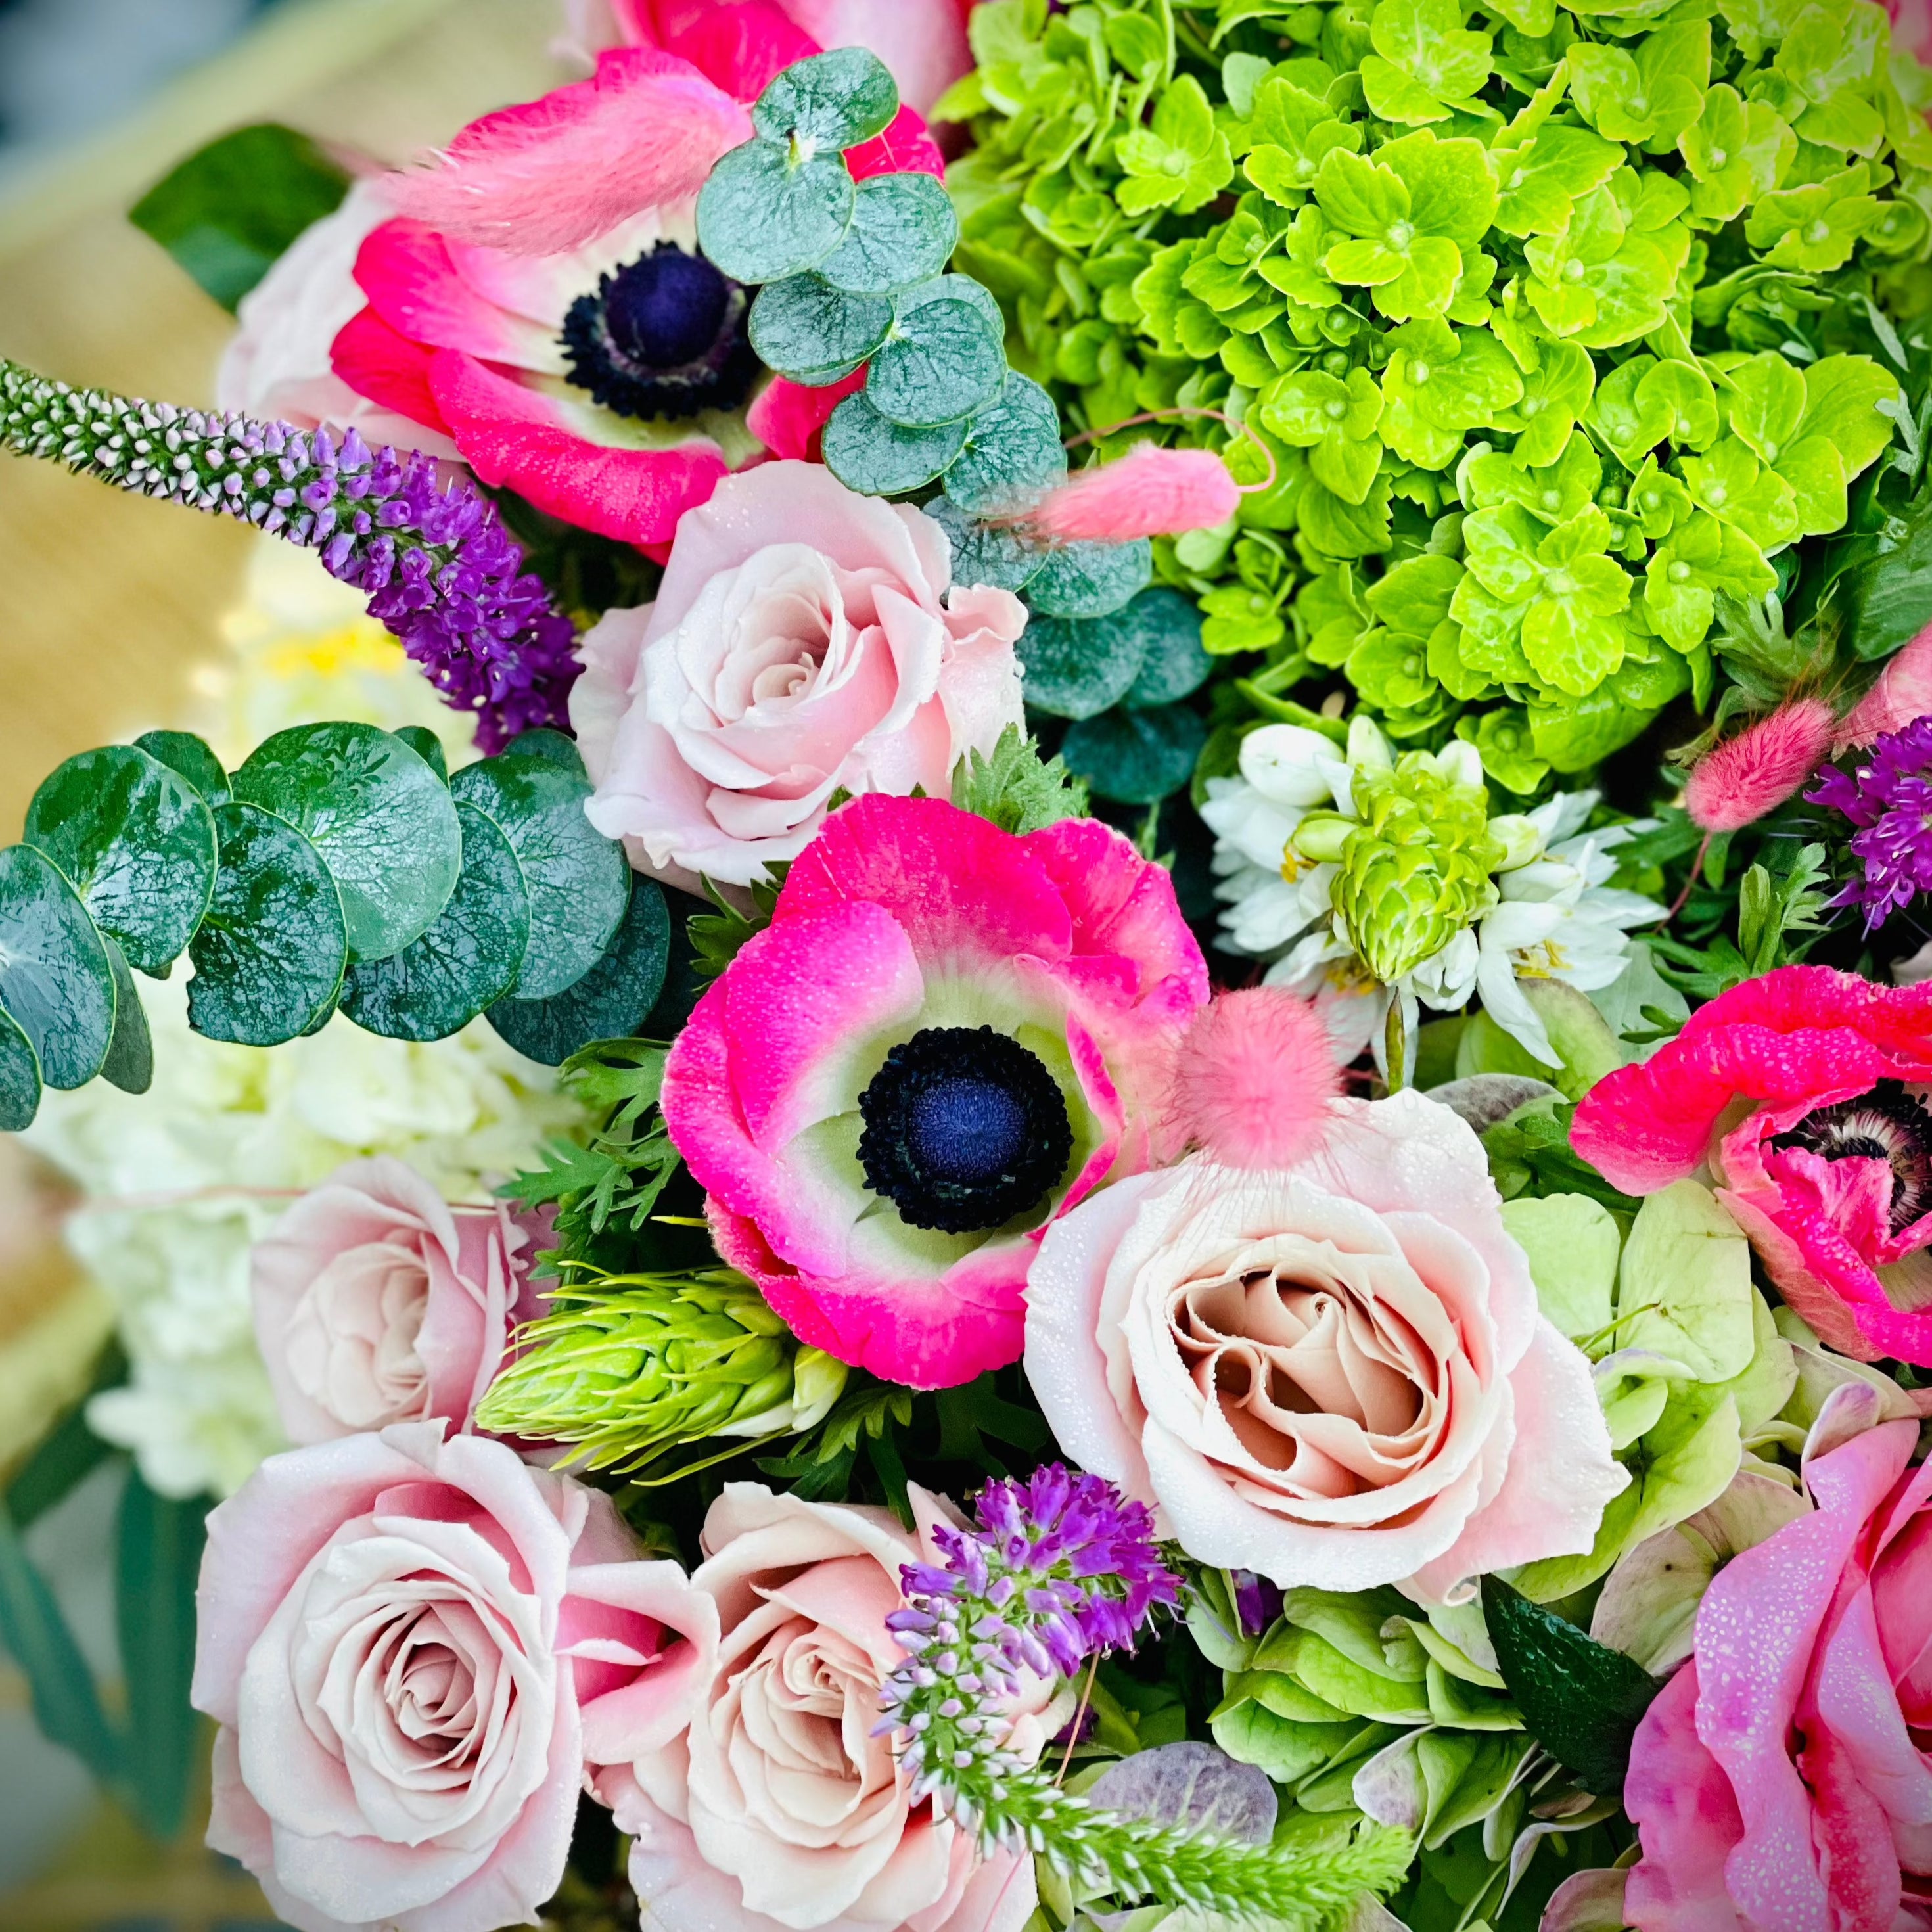 Romantic florist choice arrangement